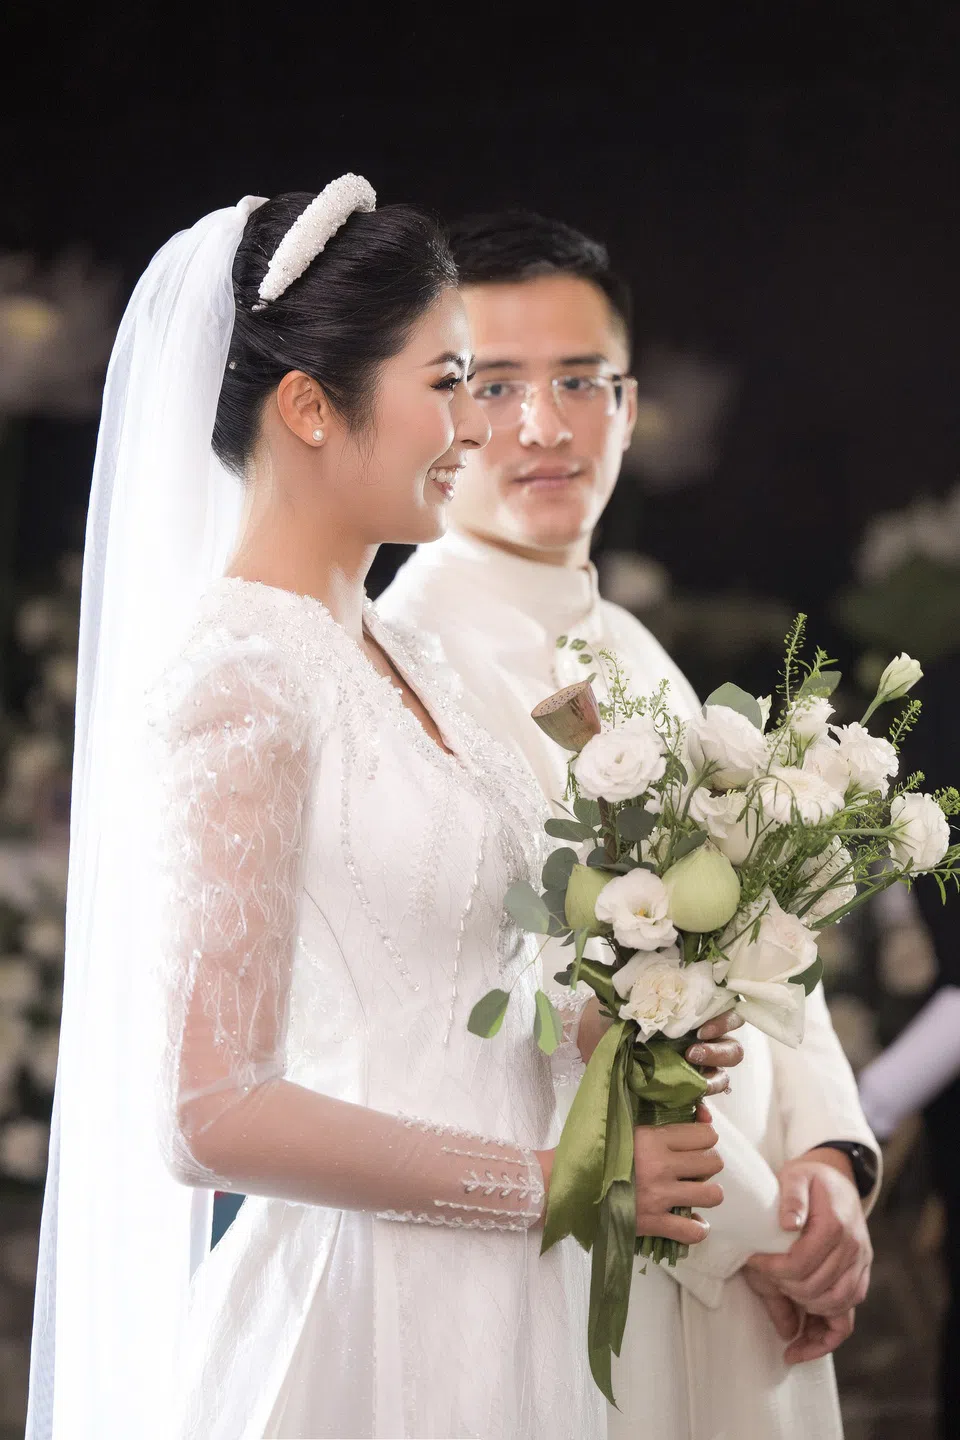 5 Hoa hậu Việt Nam trong đám cưới của Ngọc Hân: Cả bầu trời nhan sắc hội tụ